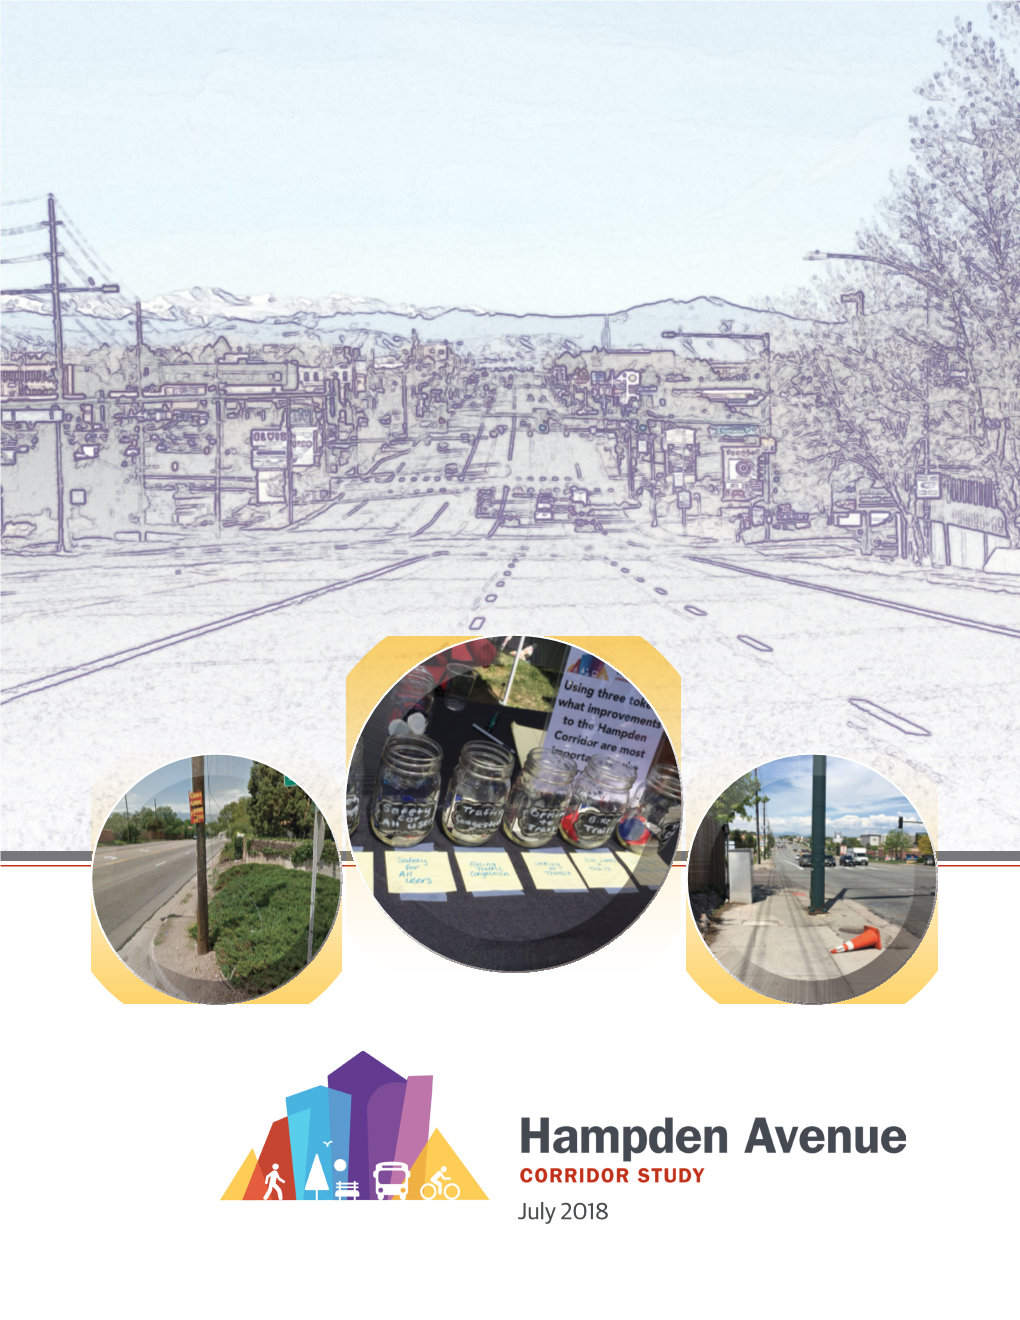 The Hampden Avenue Corridor Study Is Dedicated to Steve Hersey